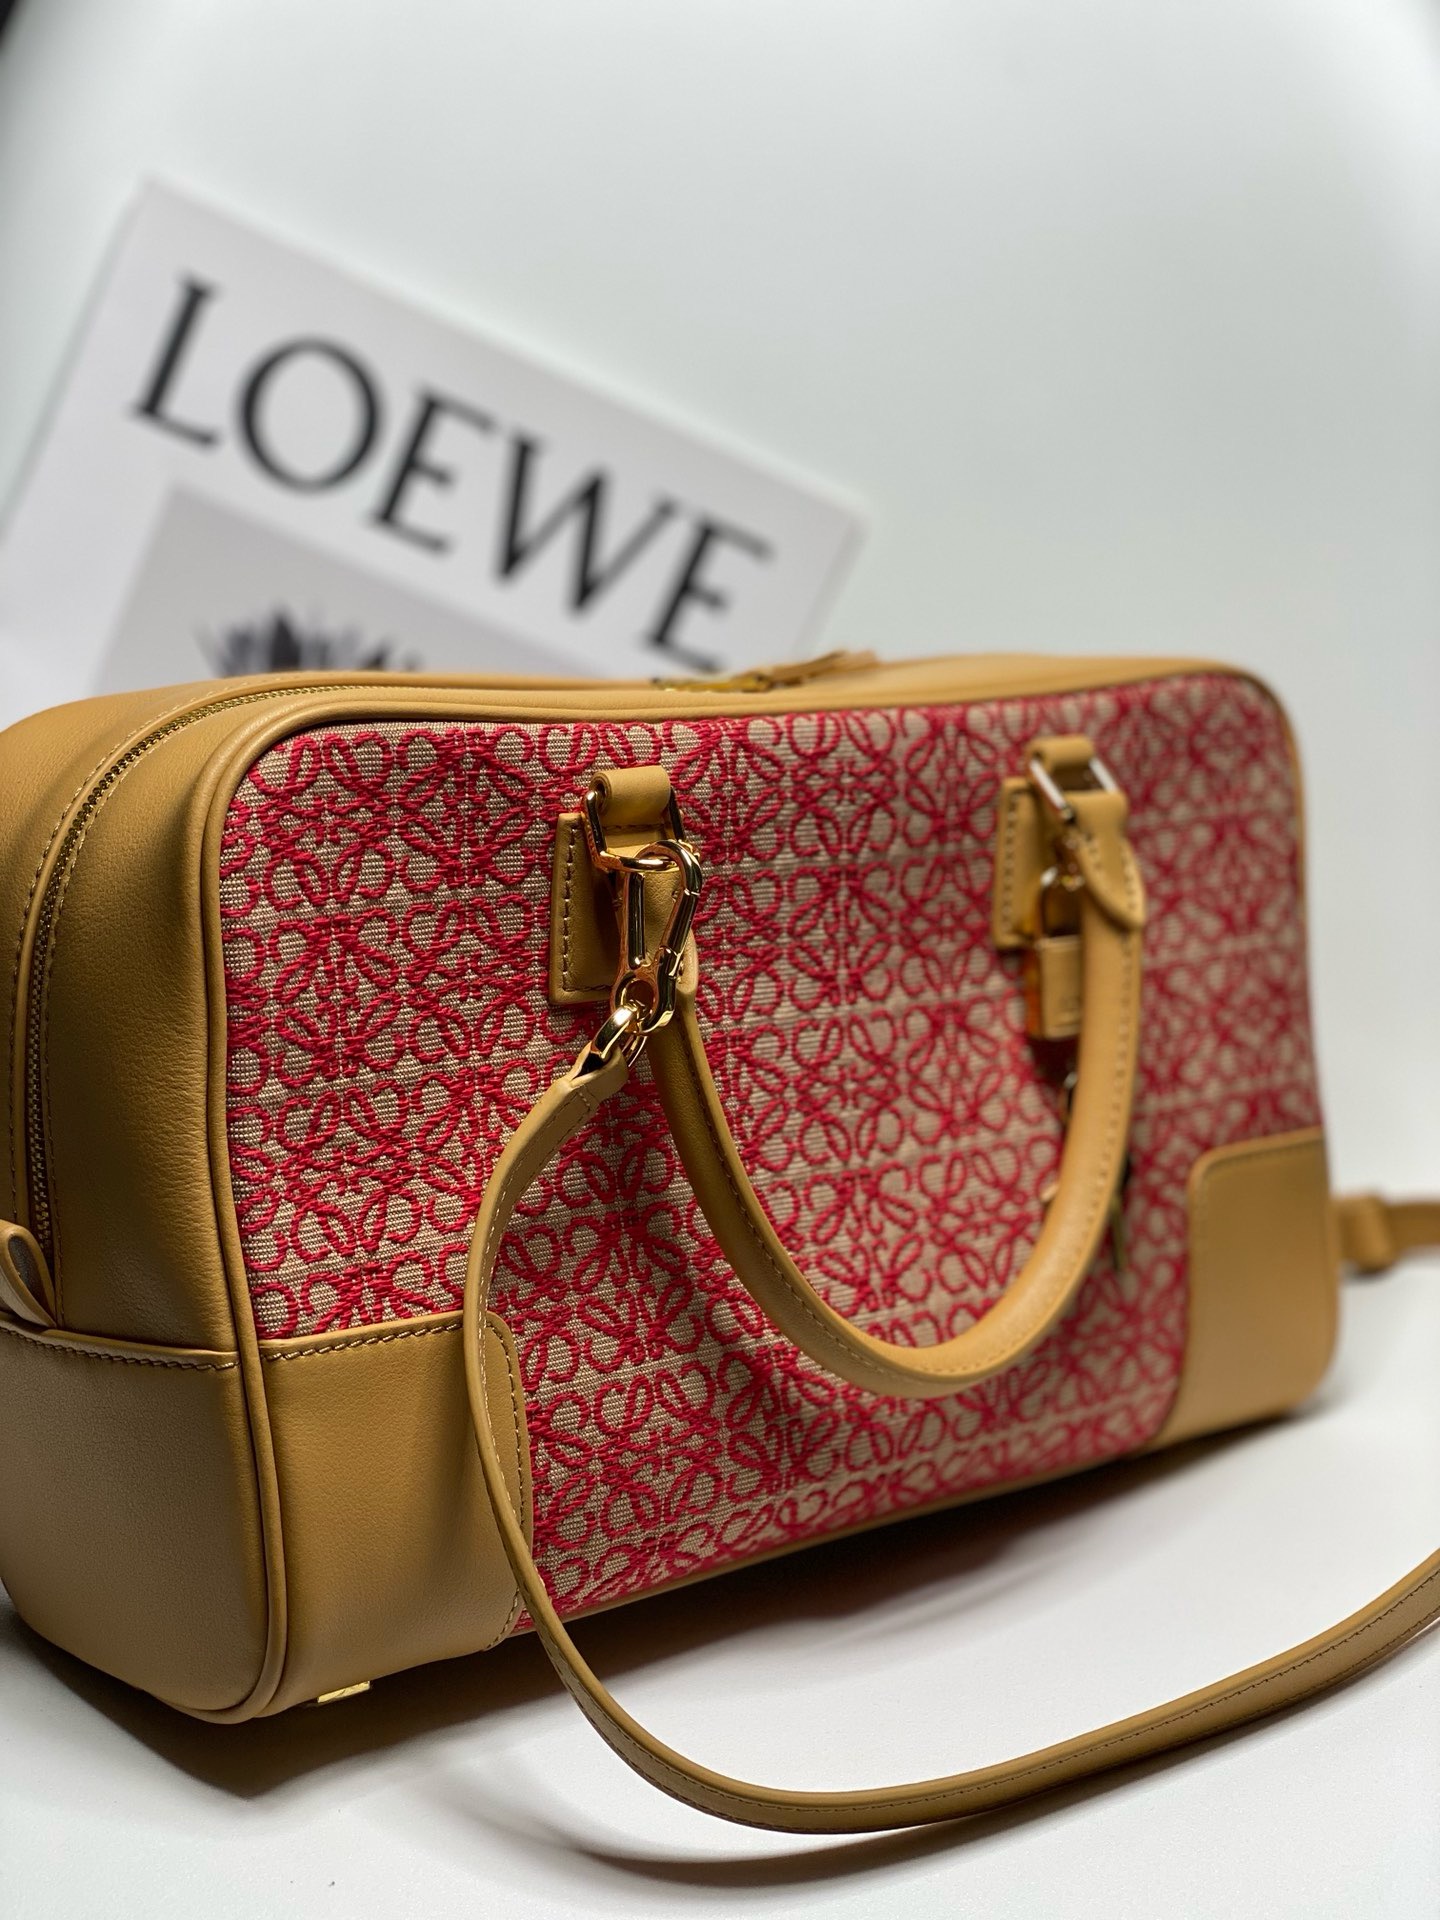 Loewe Original Leather tote 652388 brown&red